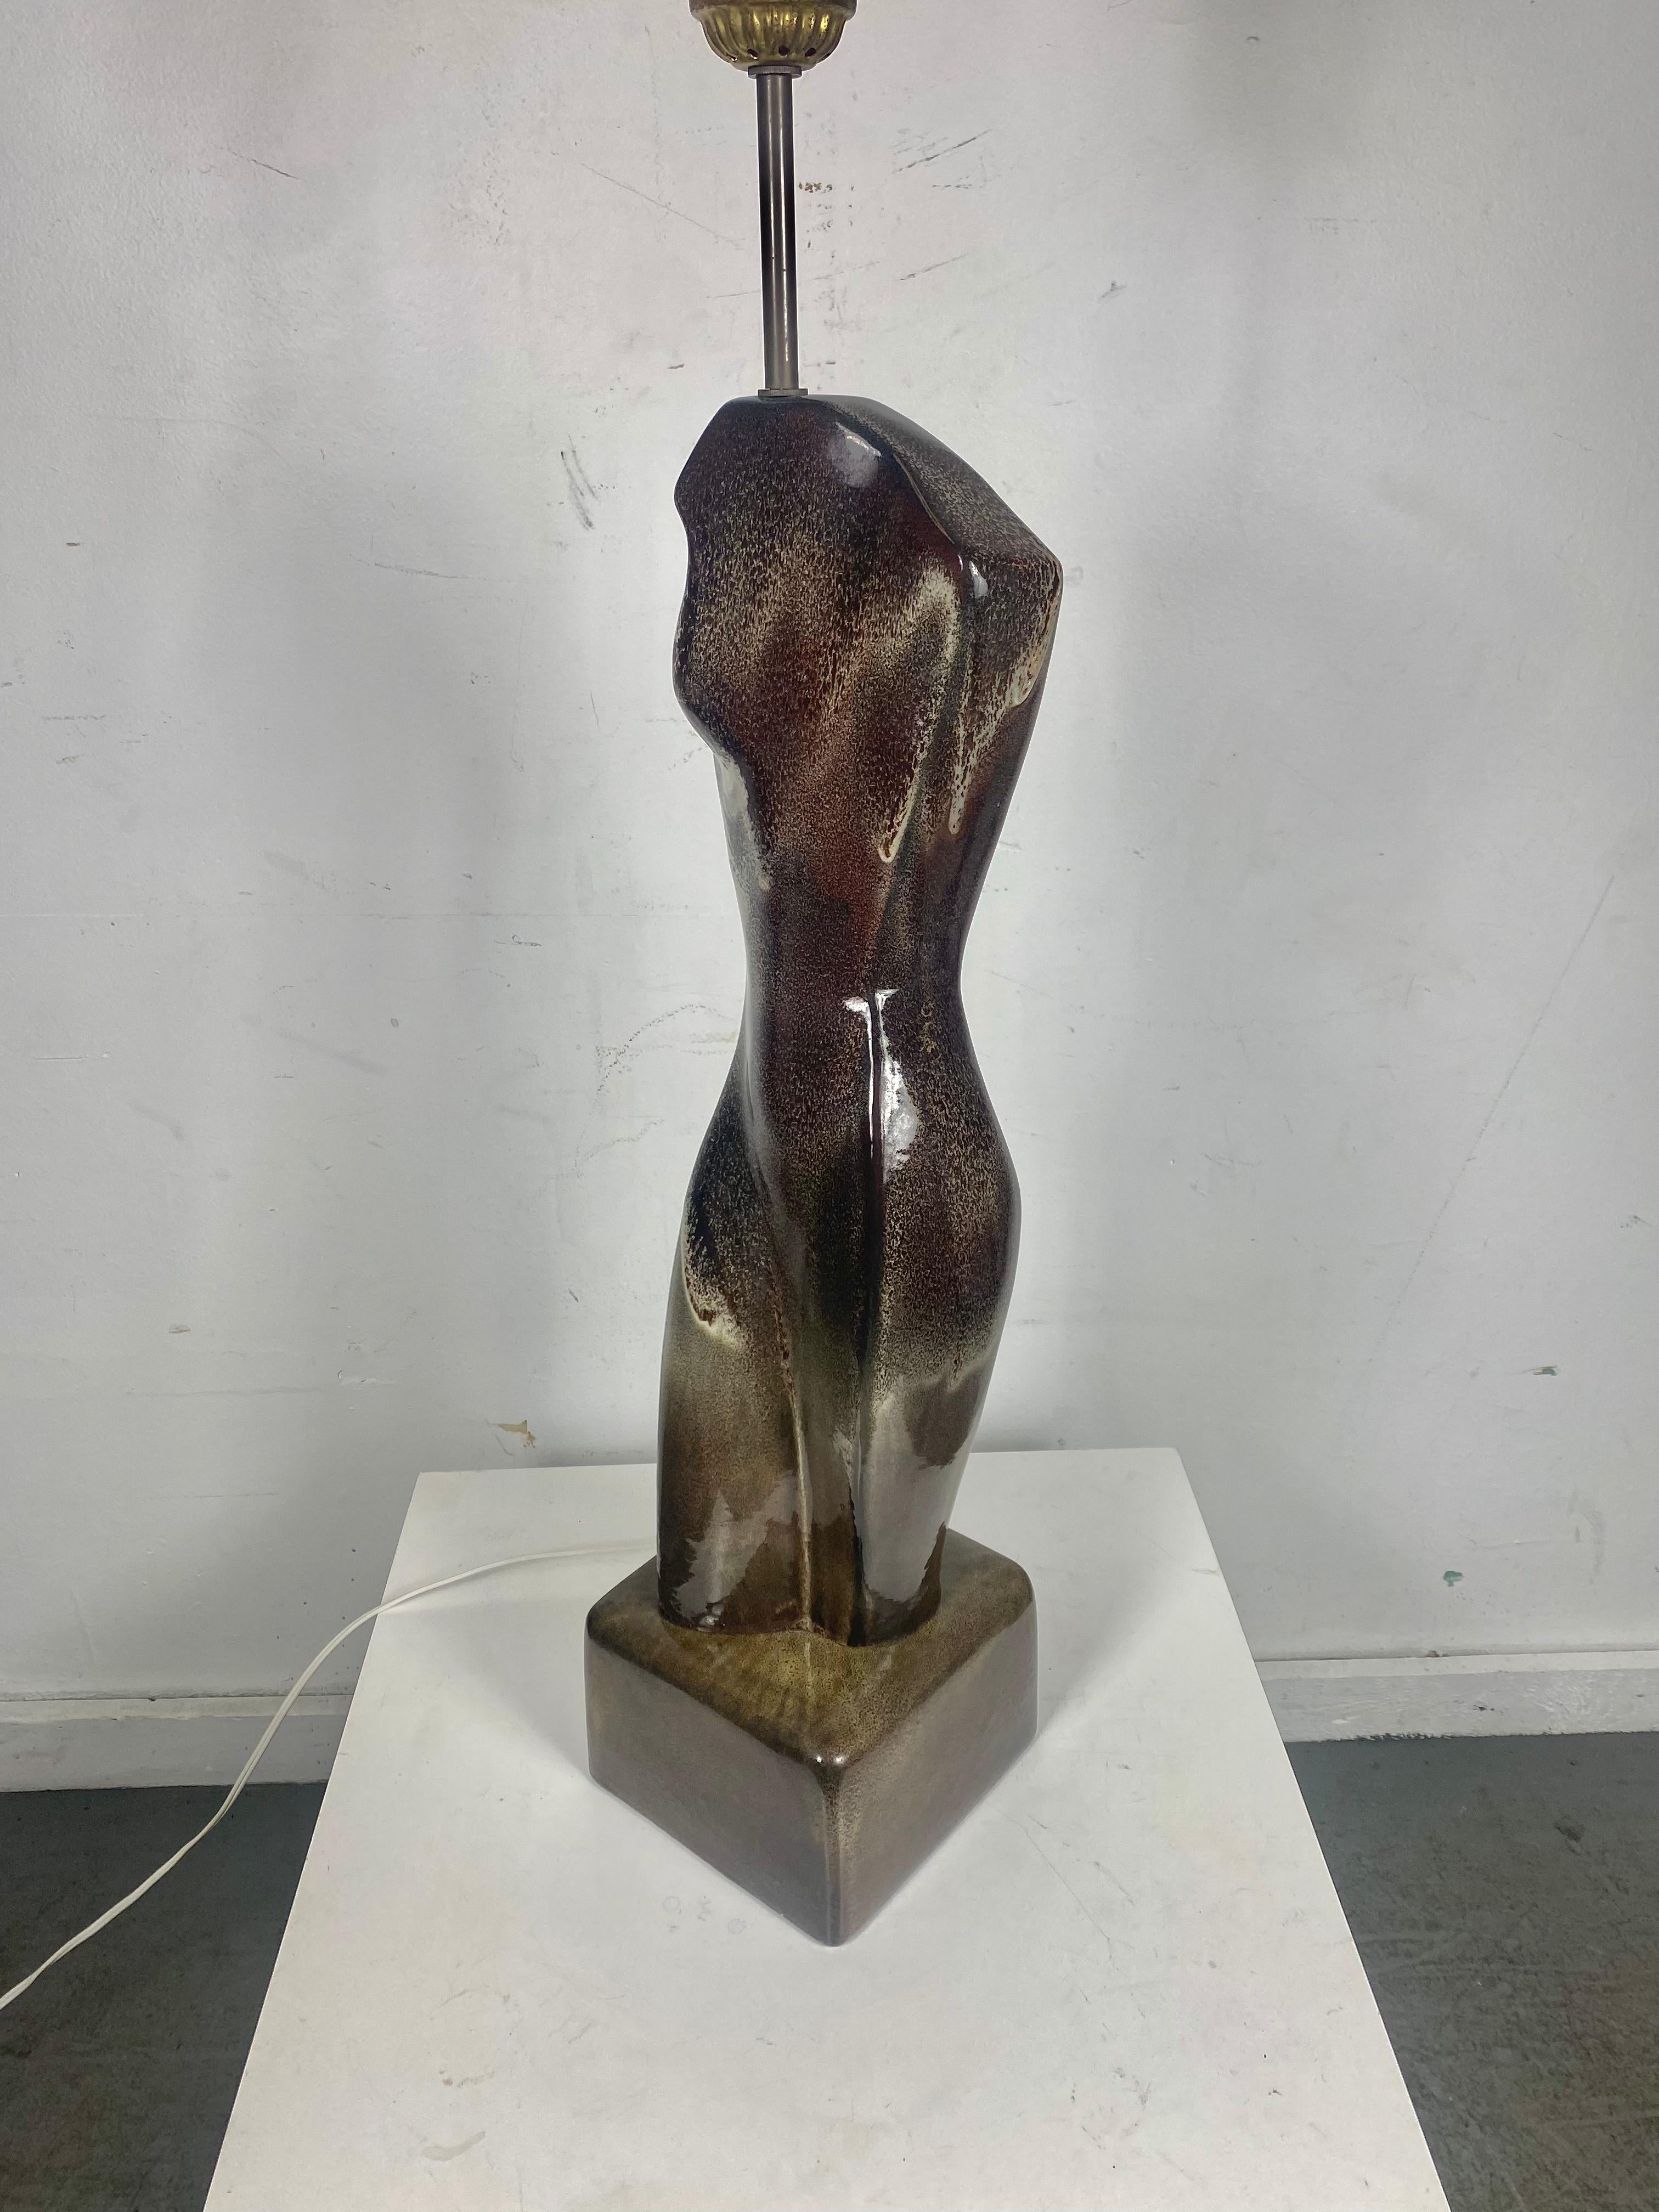 skulpturale, organisch geformte Lampe aus glasierter Keramik von Arpad Rosti. Dunkelblaugrün und grau in der Farbe. 
Arpad Rosti, der vor allem für seine bemerkenswert originellen Lampen, Tabletts und Gefäße in organischen, freien Formen bekannt